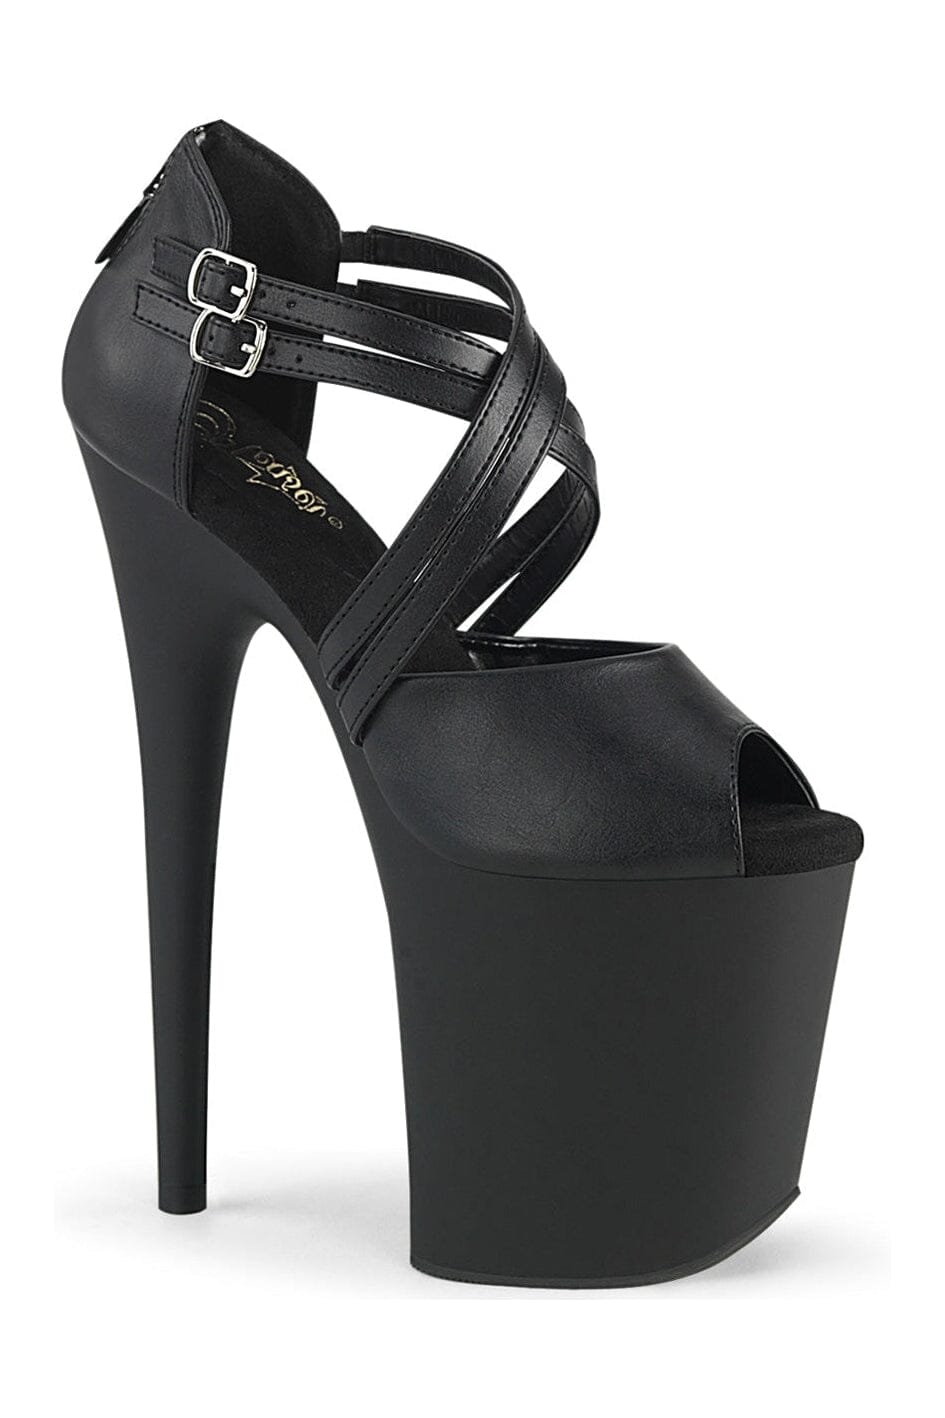 FLAMINGO-865 Black Faux Leather Sandal-Sandals-Pleaser-Black-5-Faux Leather-SEXYSHOES.COM